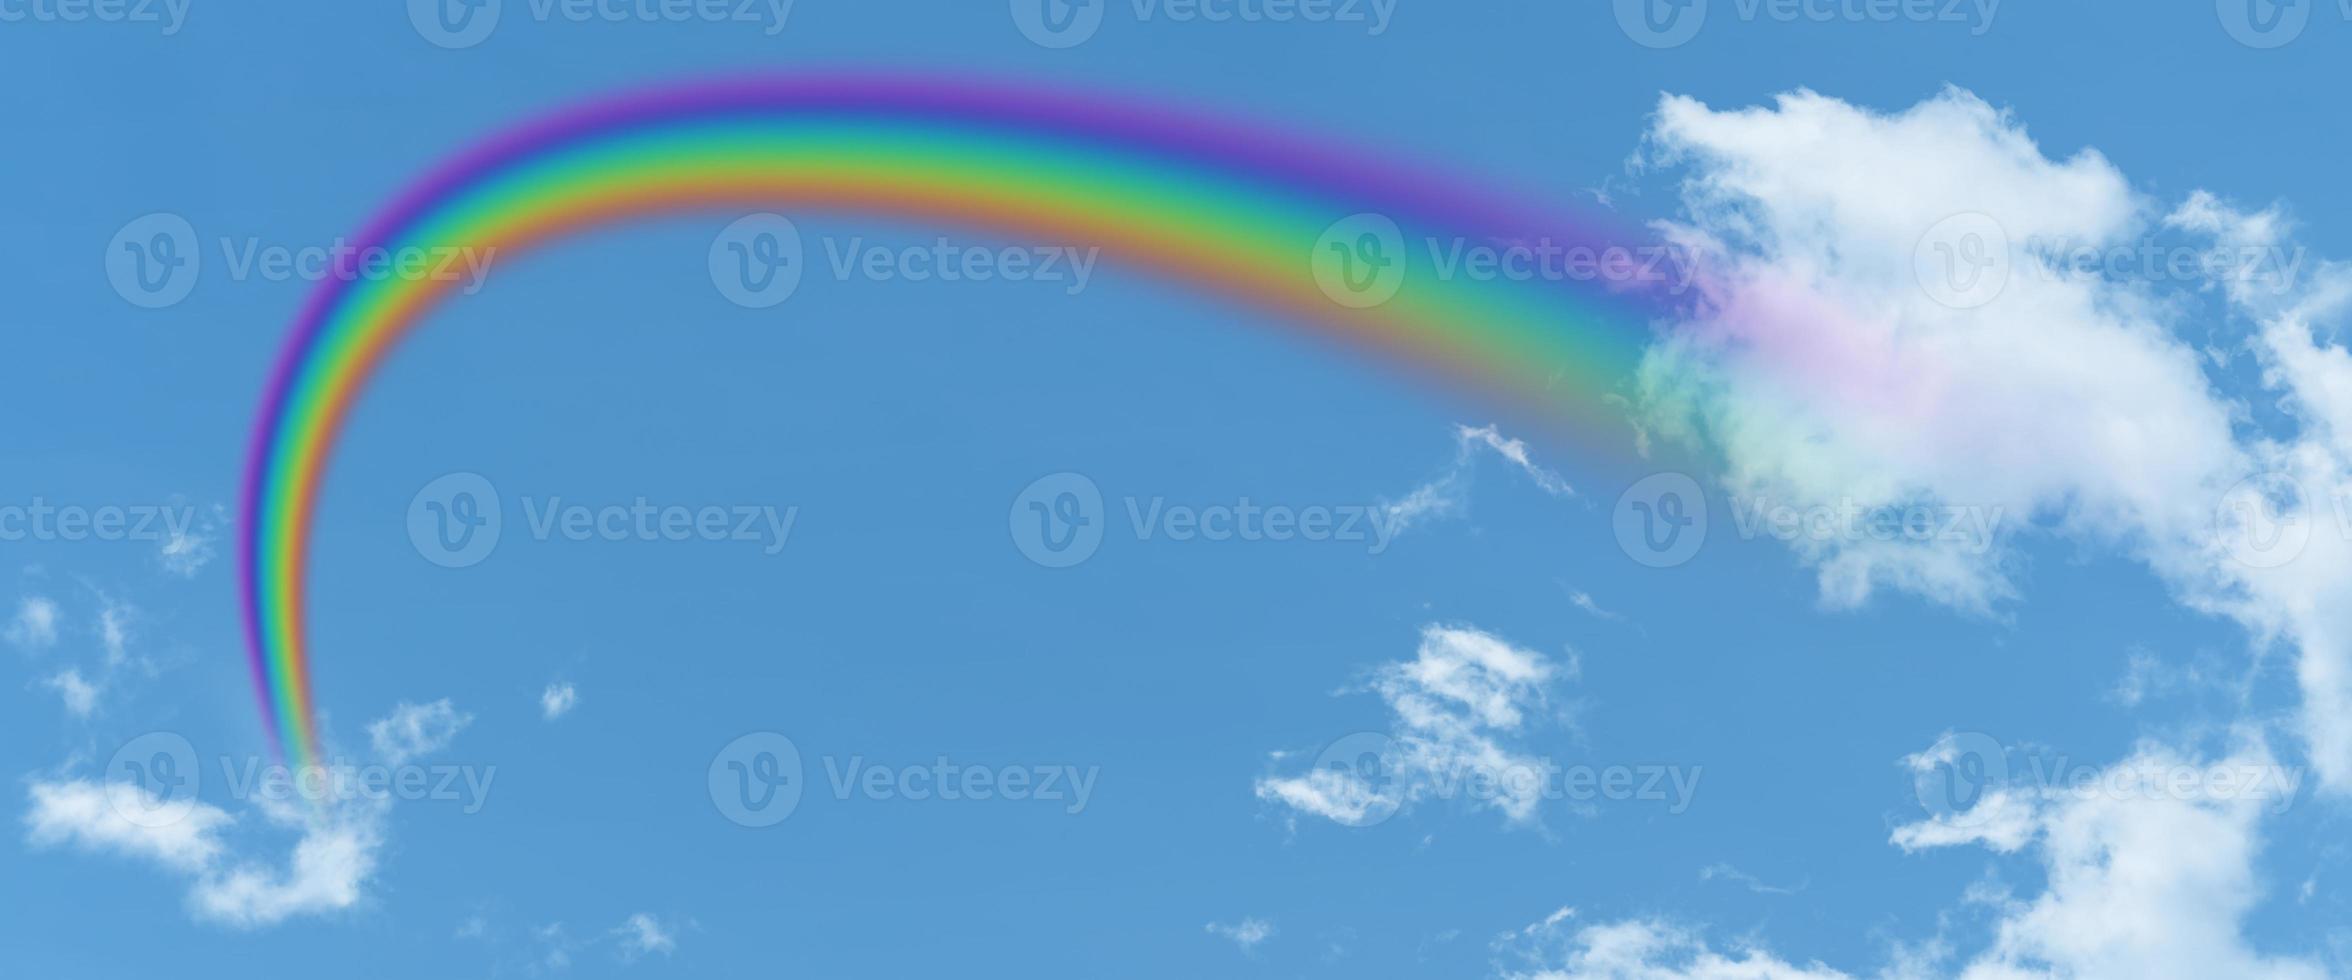 weiße wolke und blauer himmel und regenbogenhintergrund mit kopienraum foto